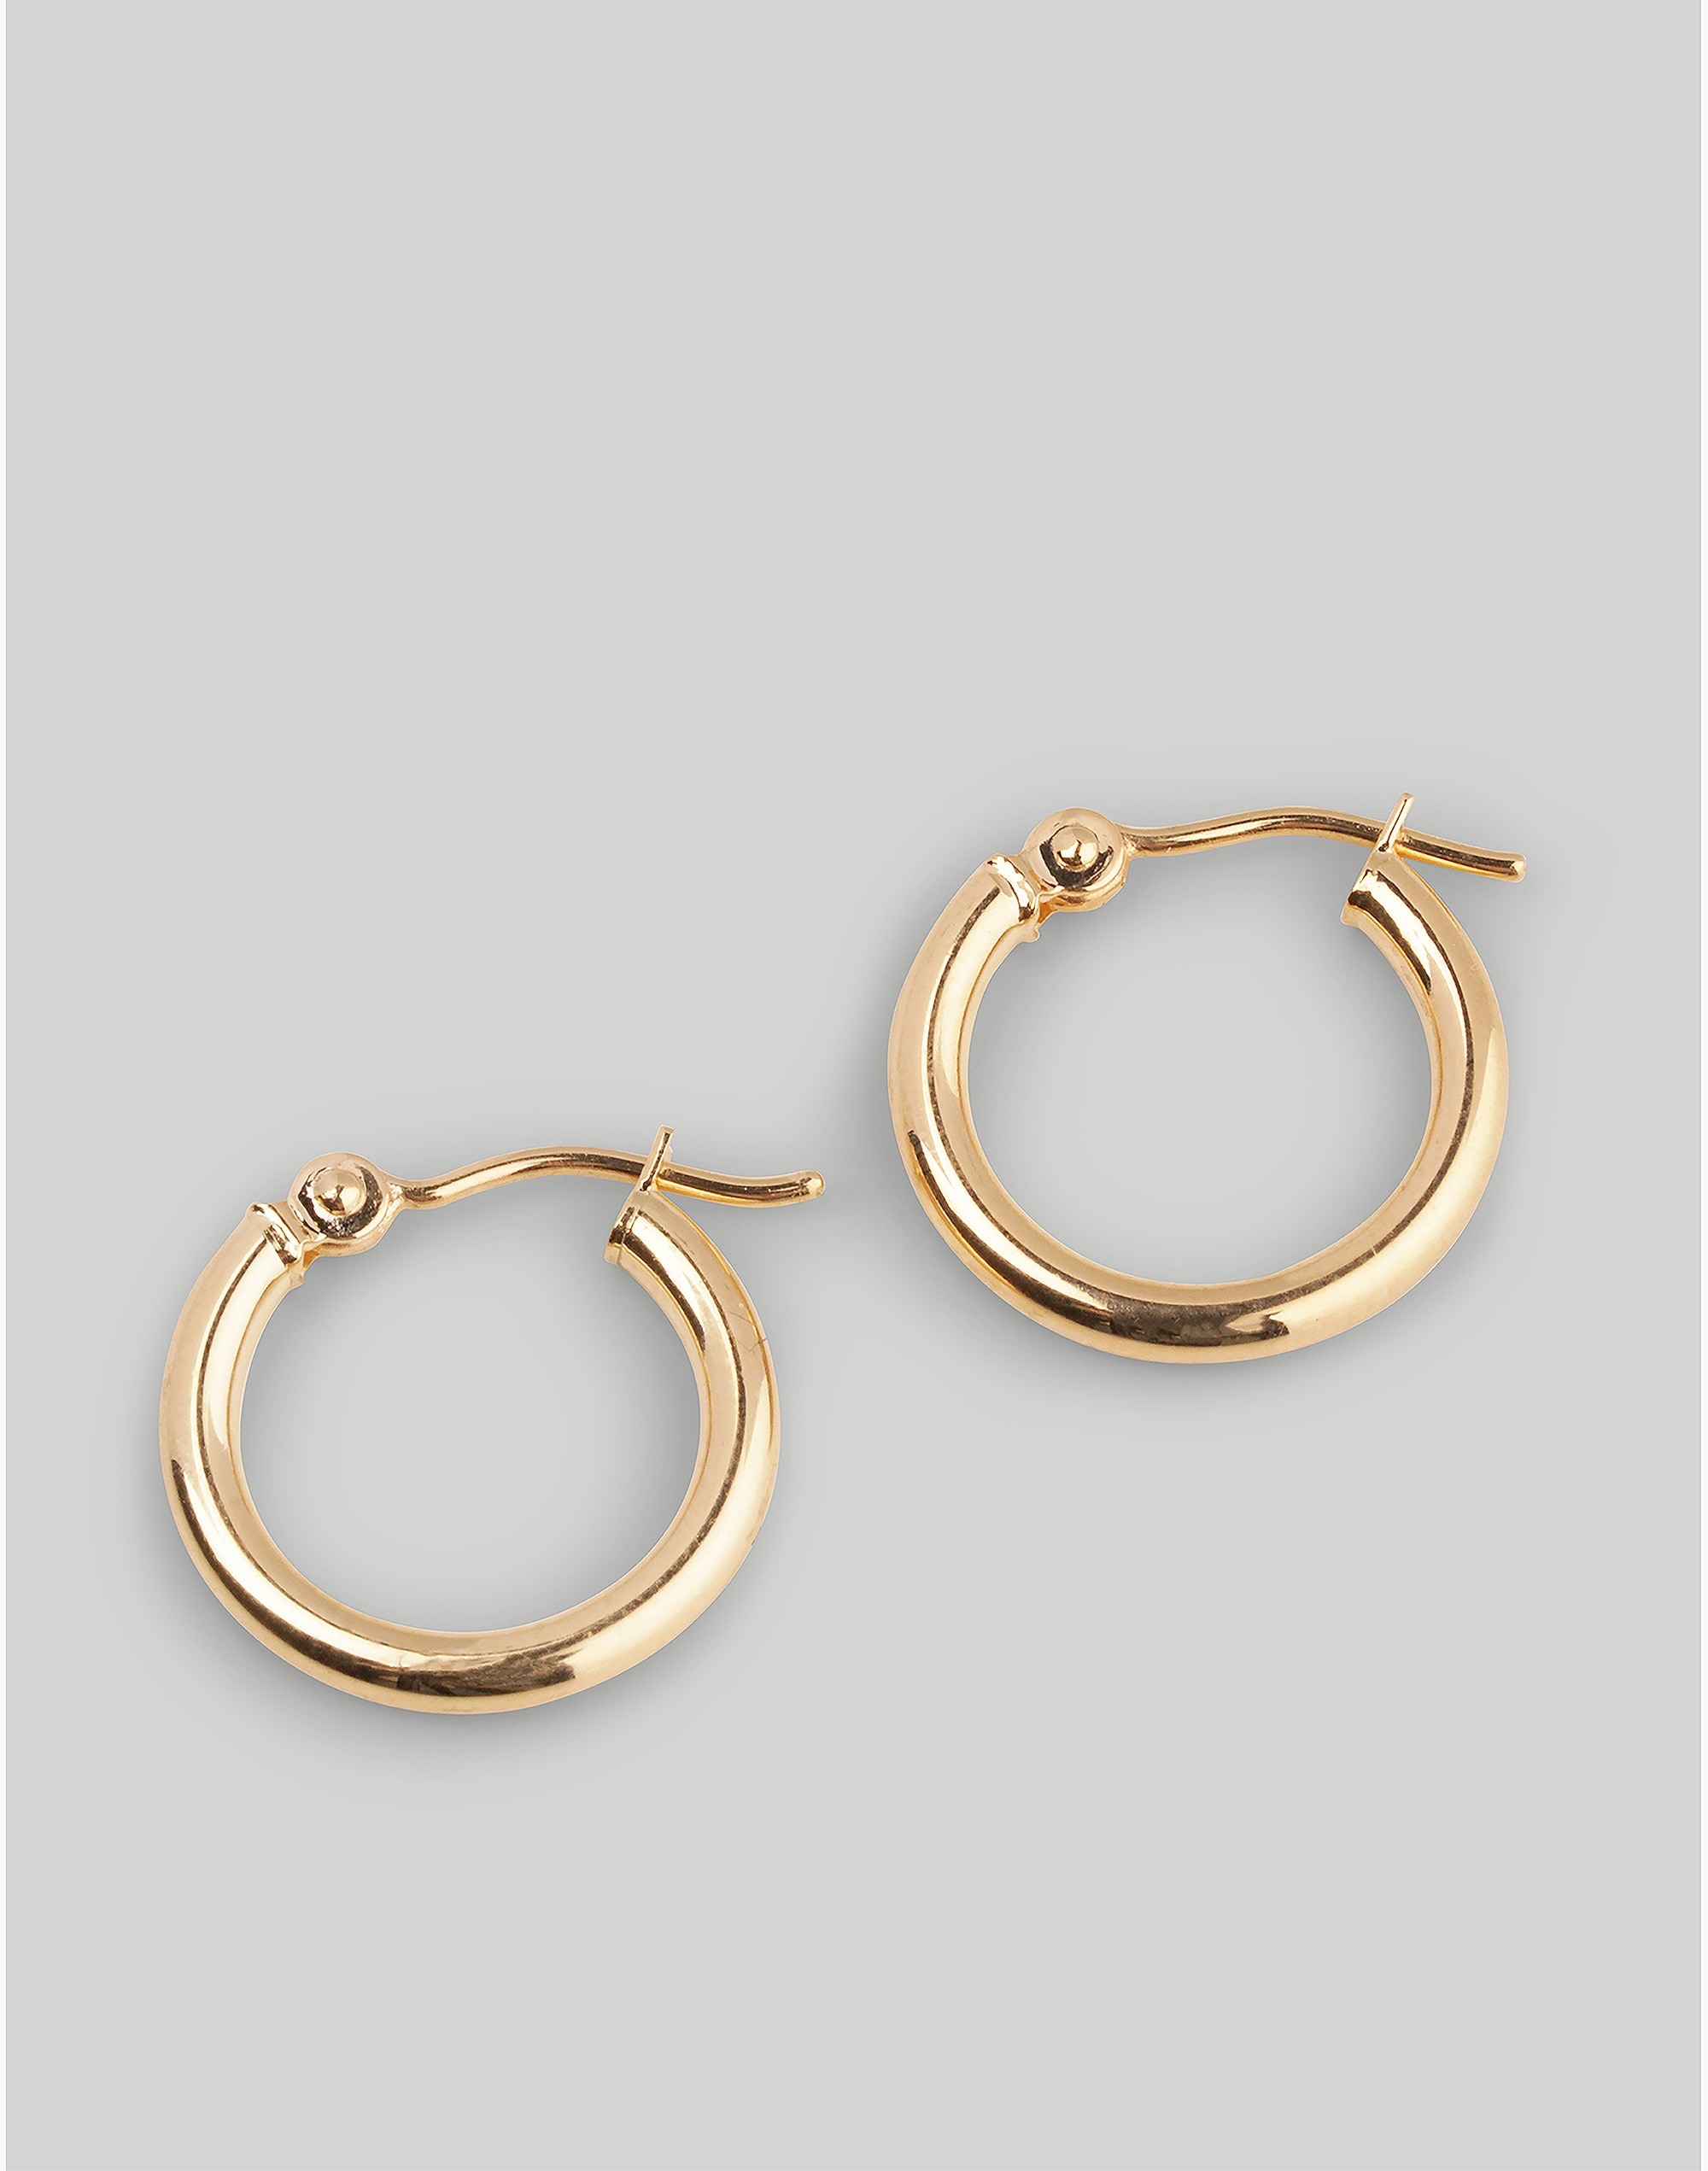 CHARLOTTE CAUWE STUDIO Click Hoop Earrings in 14K Gold